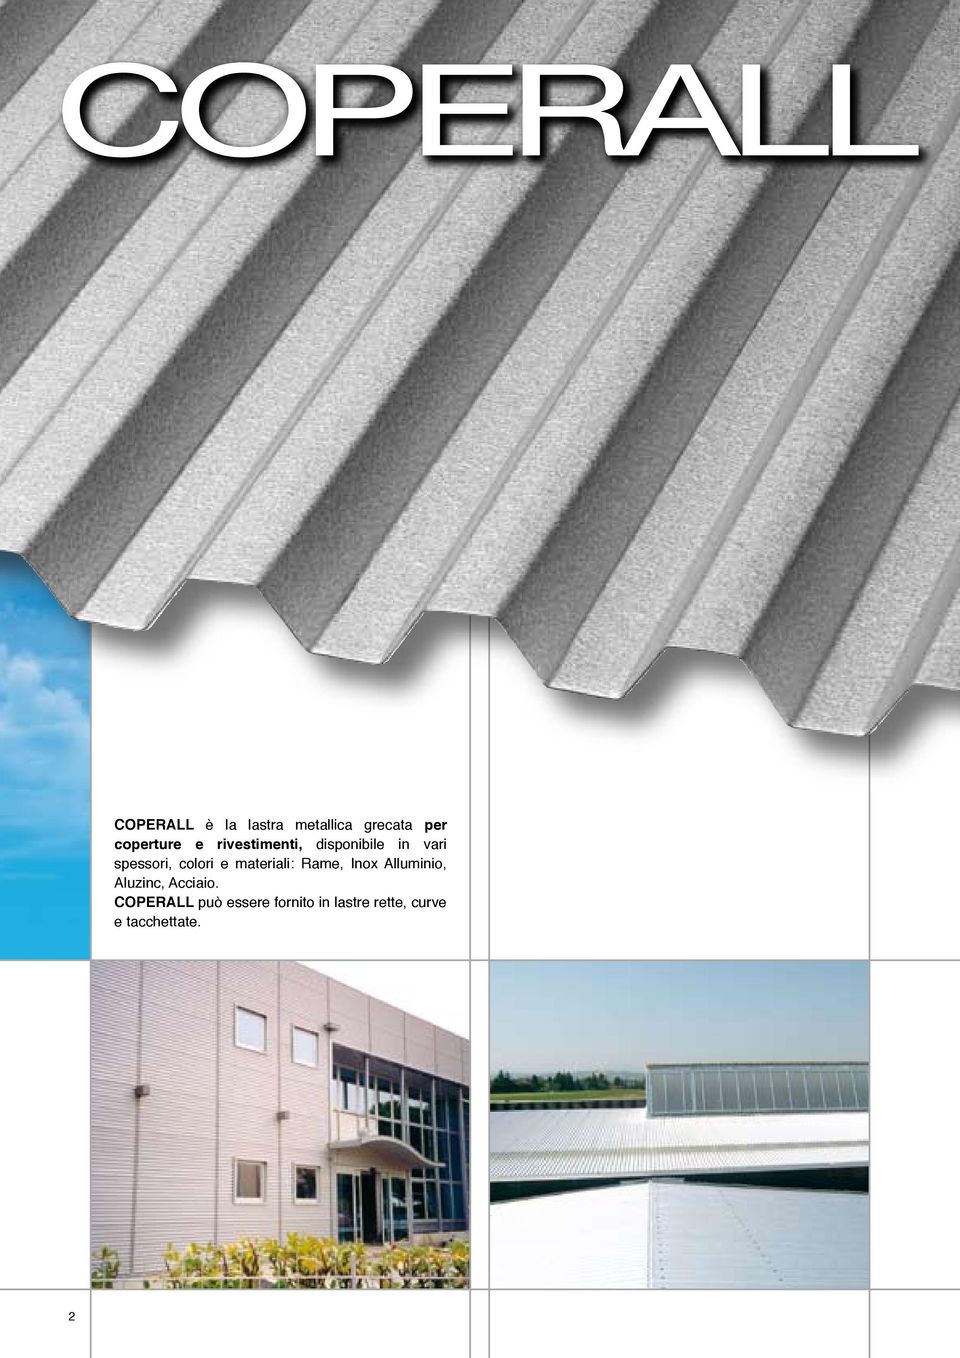 materiali: Rame, Inox Alluminio, Aluzinc, Acciaio.